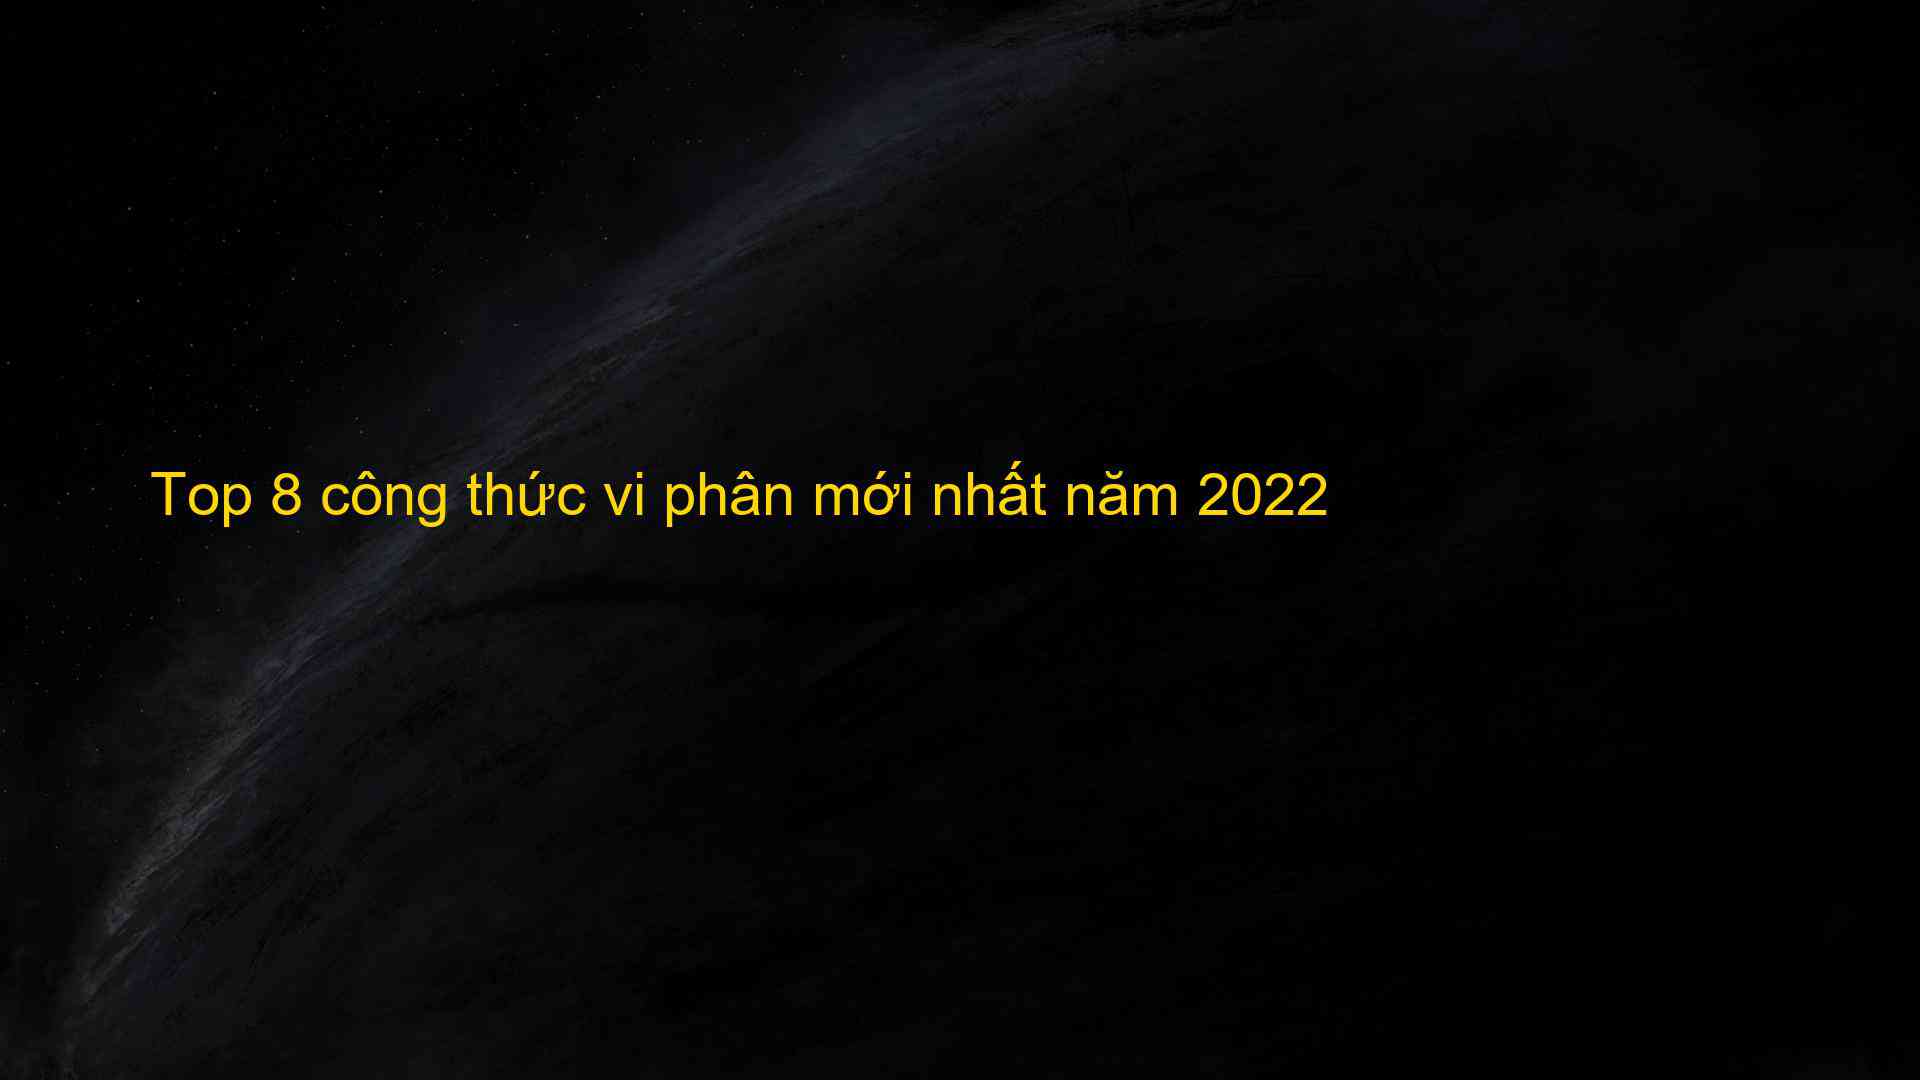 Top 8 cong thuc vi phan moi nhat nam 2022 1659777651